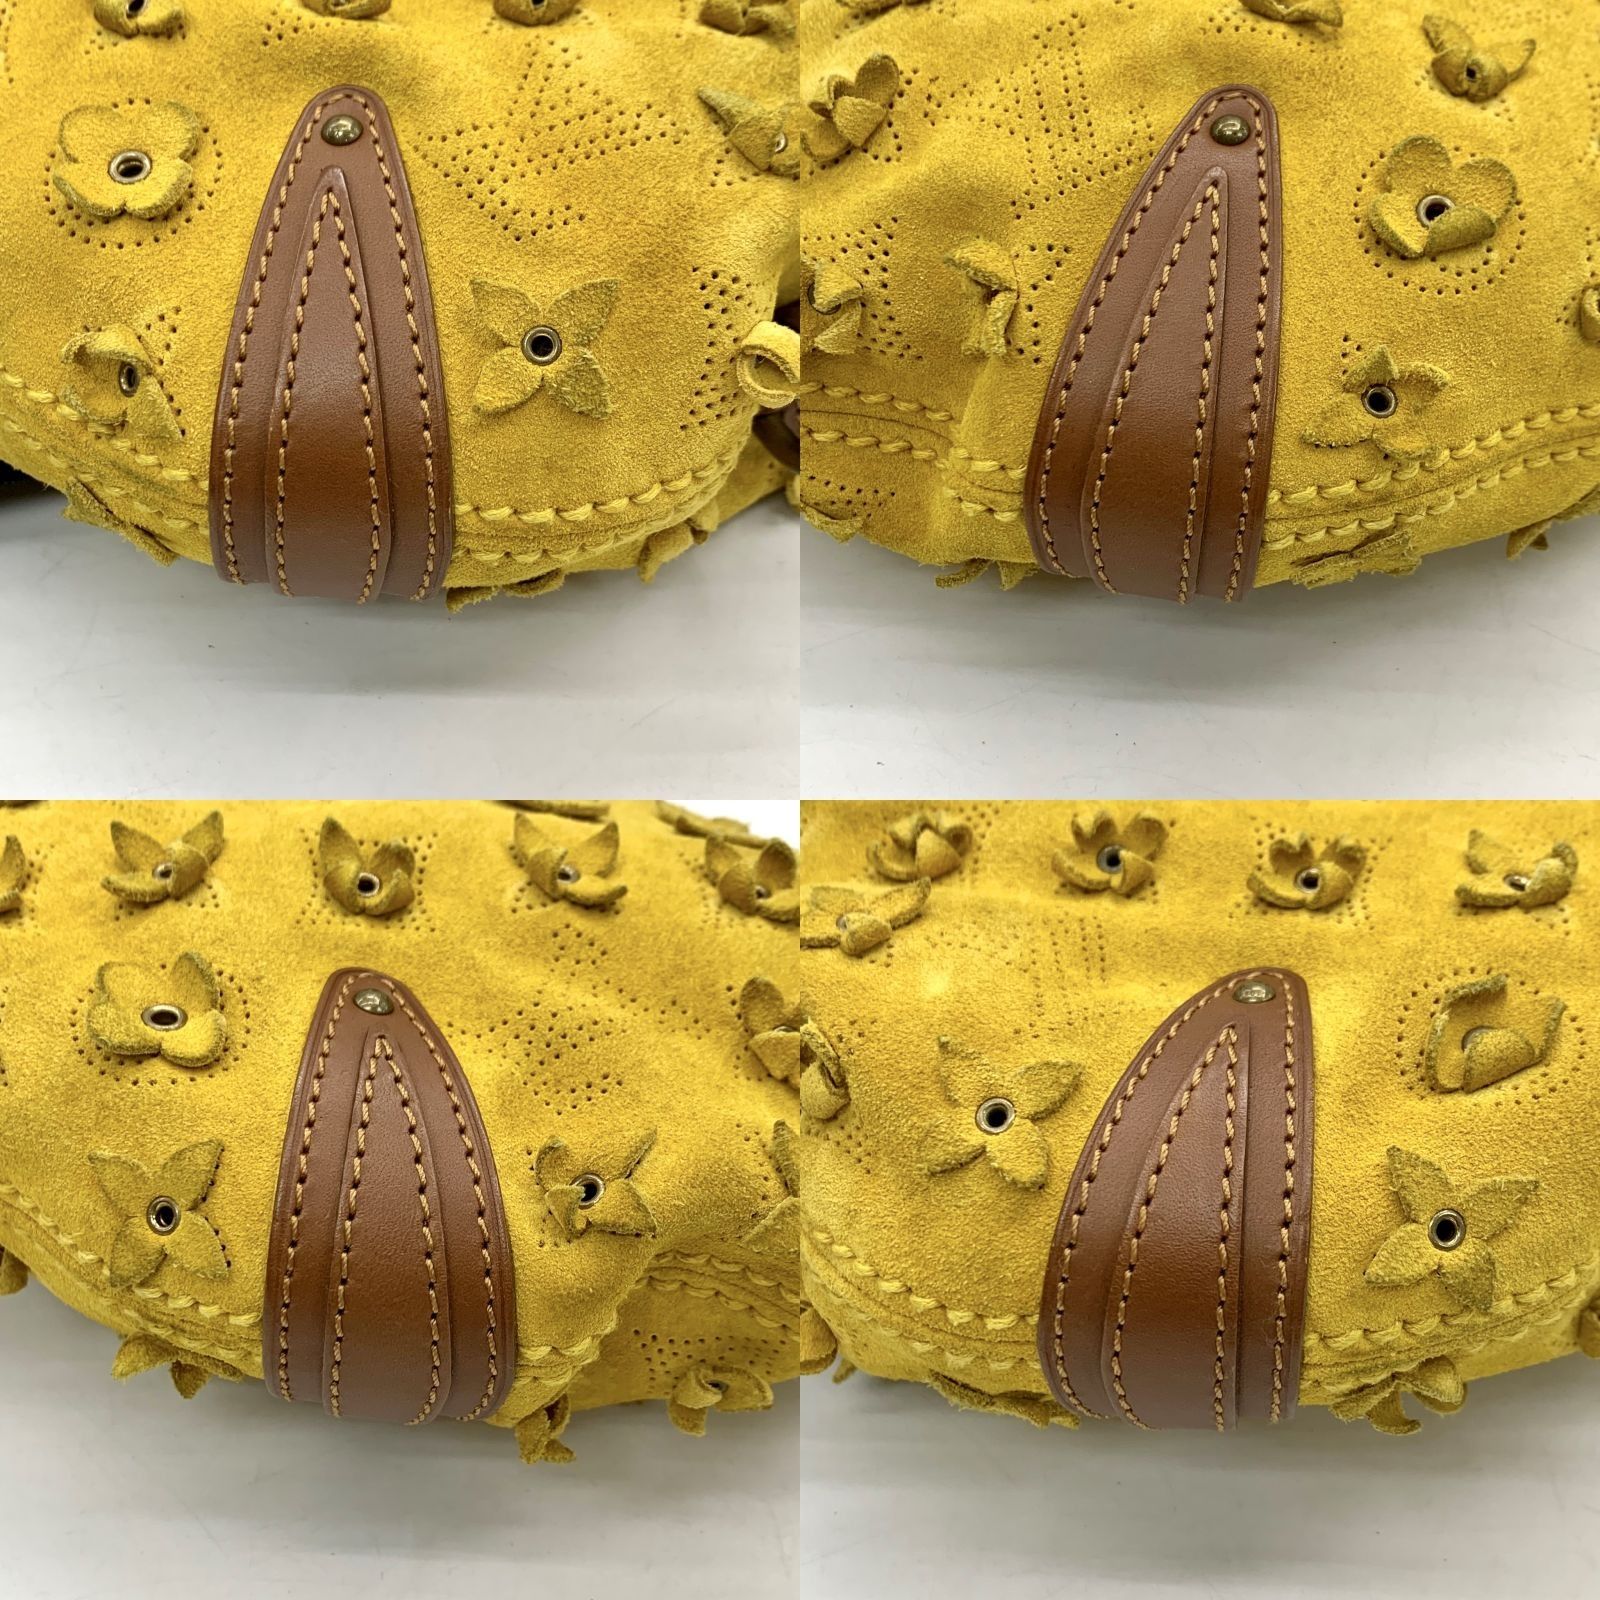 Louis Vuitton Onatah Fleurs Mustard Suede Leather PM Shoulder Bag